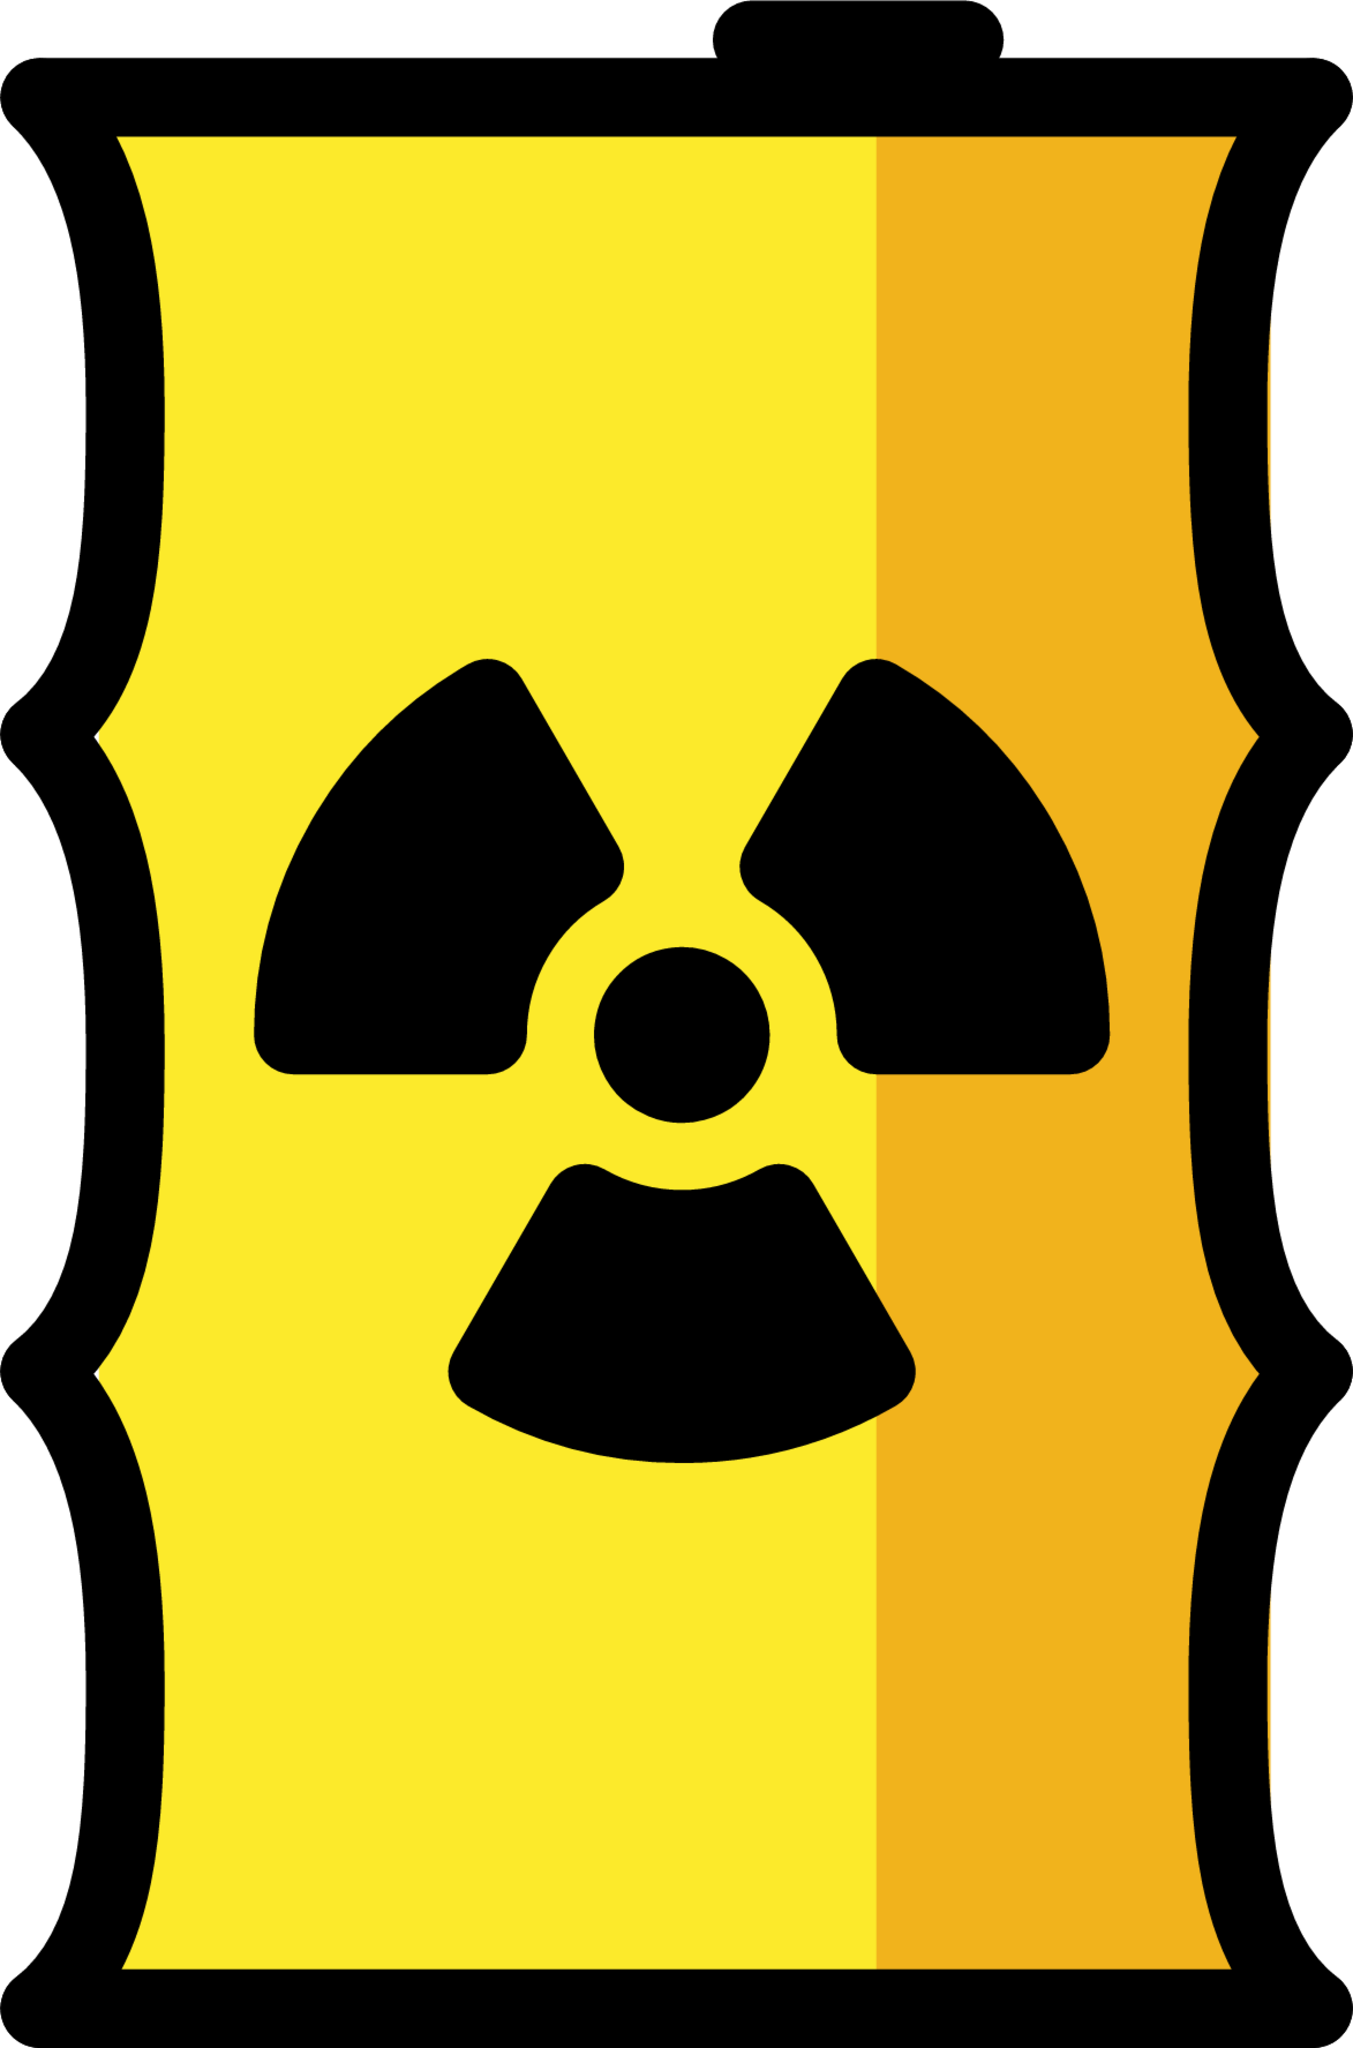 radioactive waste emoji